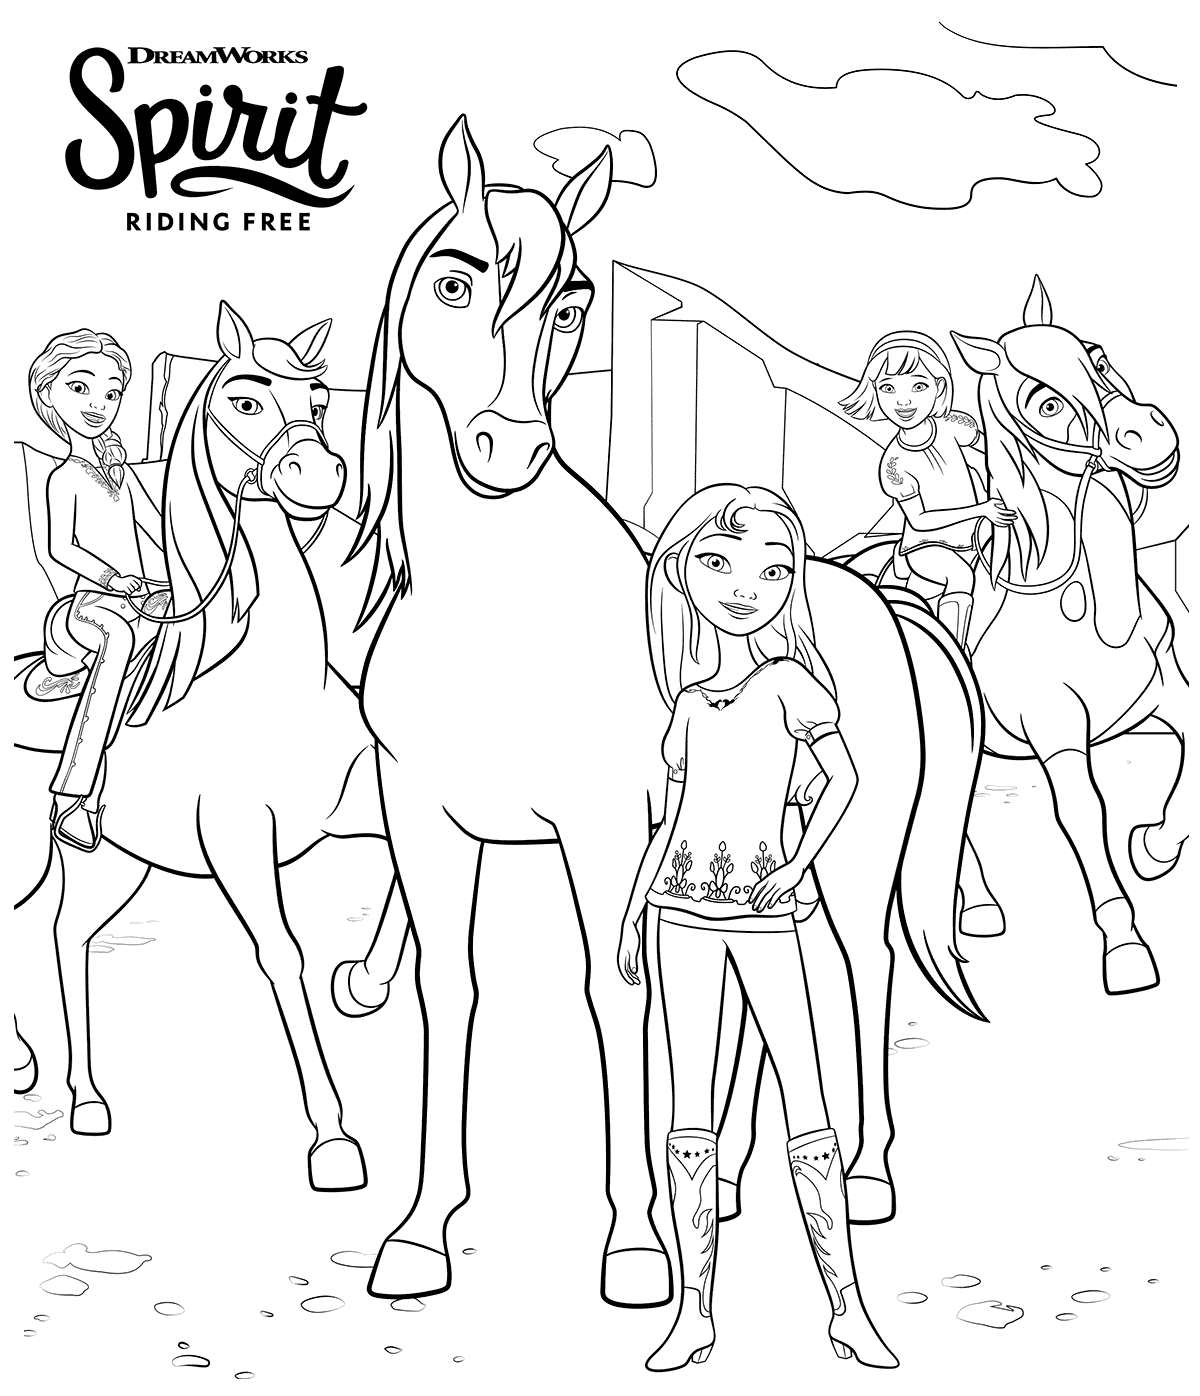 Netflix 上的《Spirit Riding Free》来自《Spirit Riding Free》